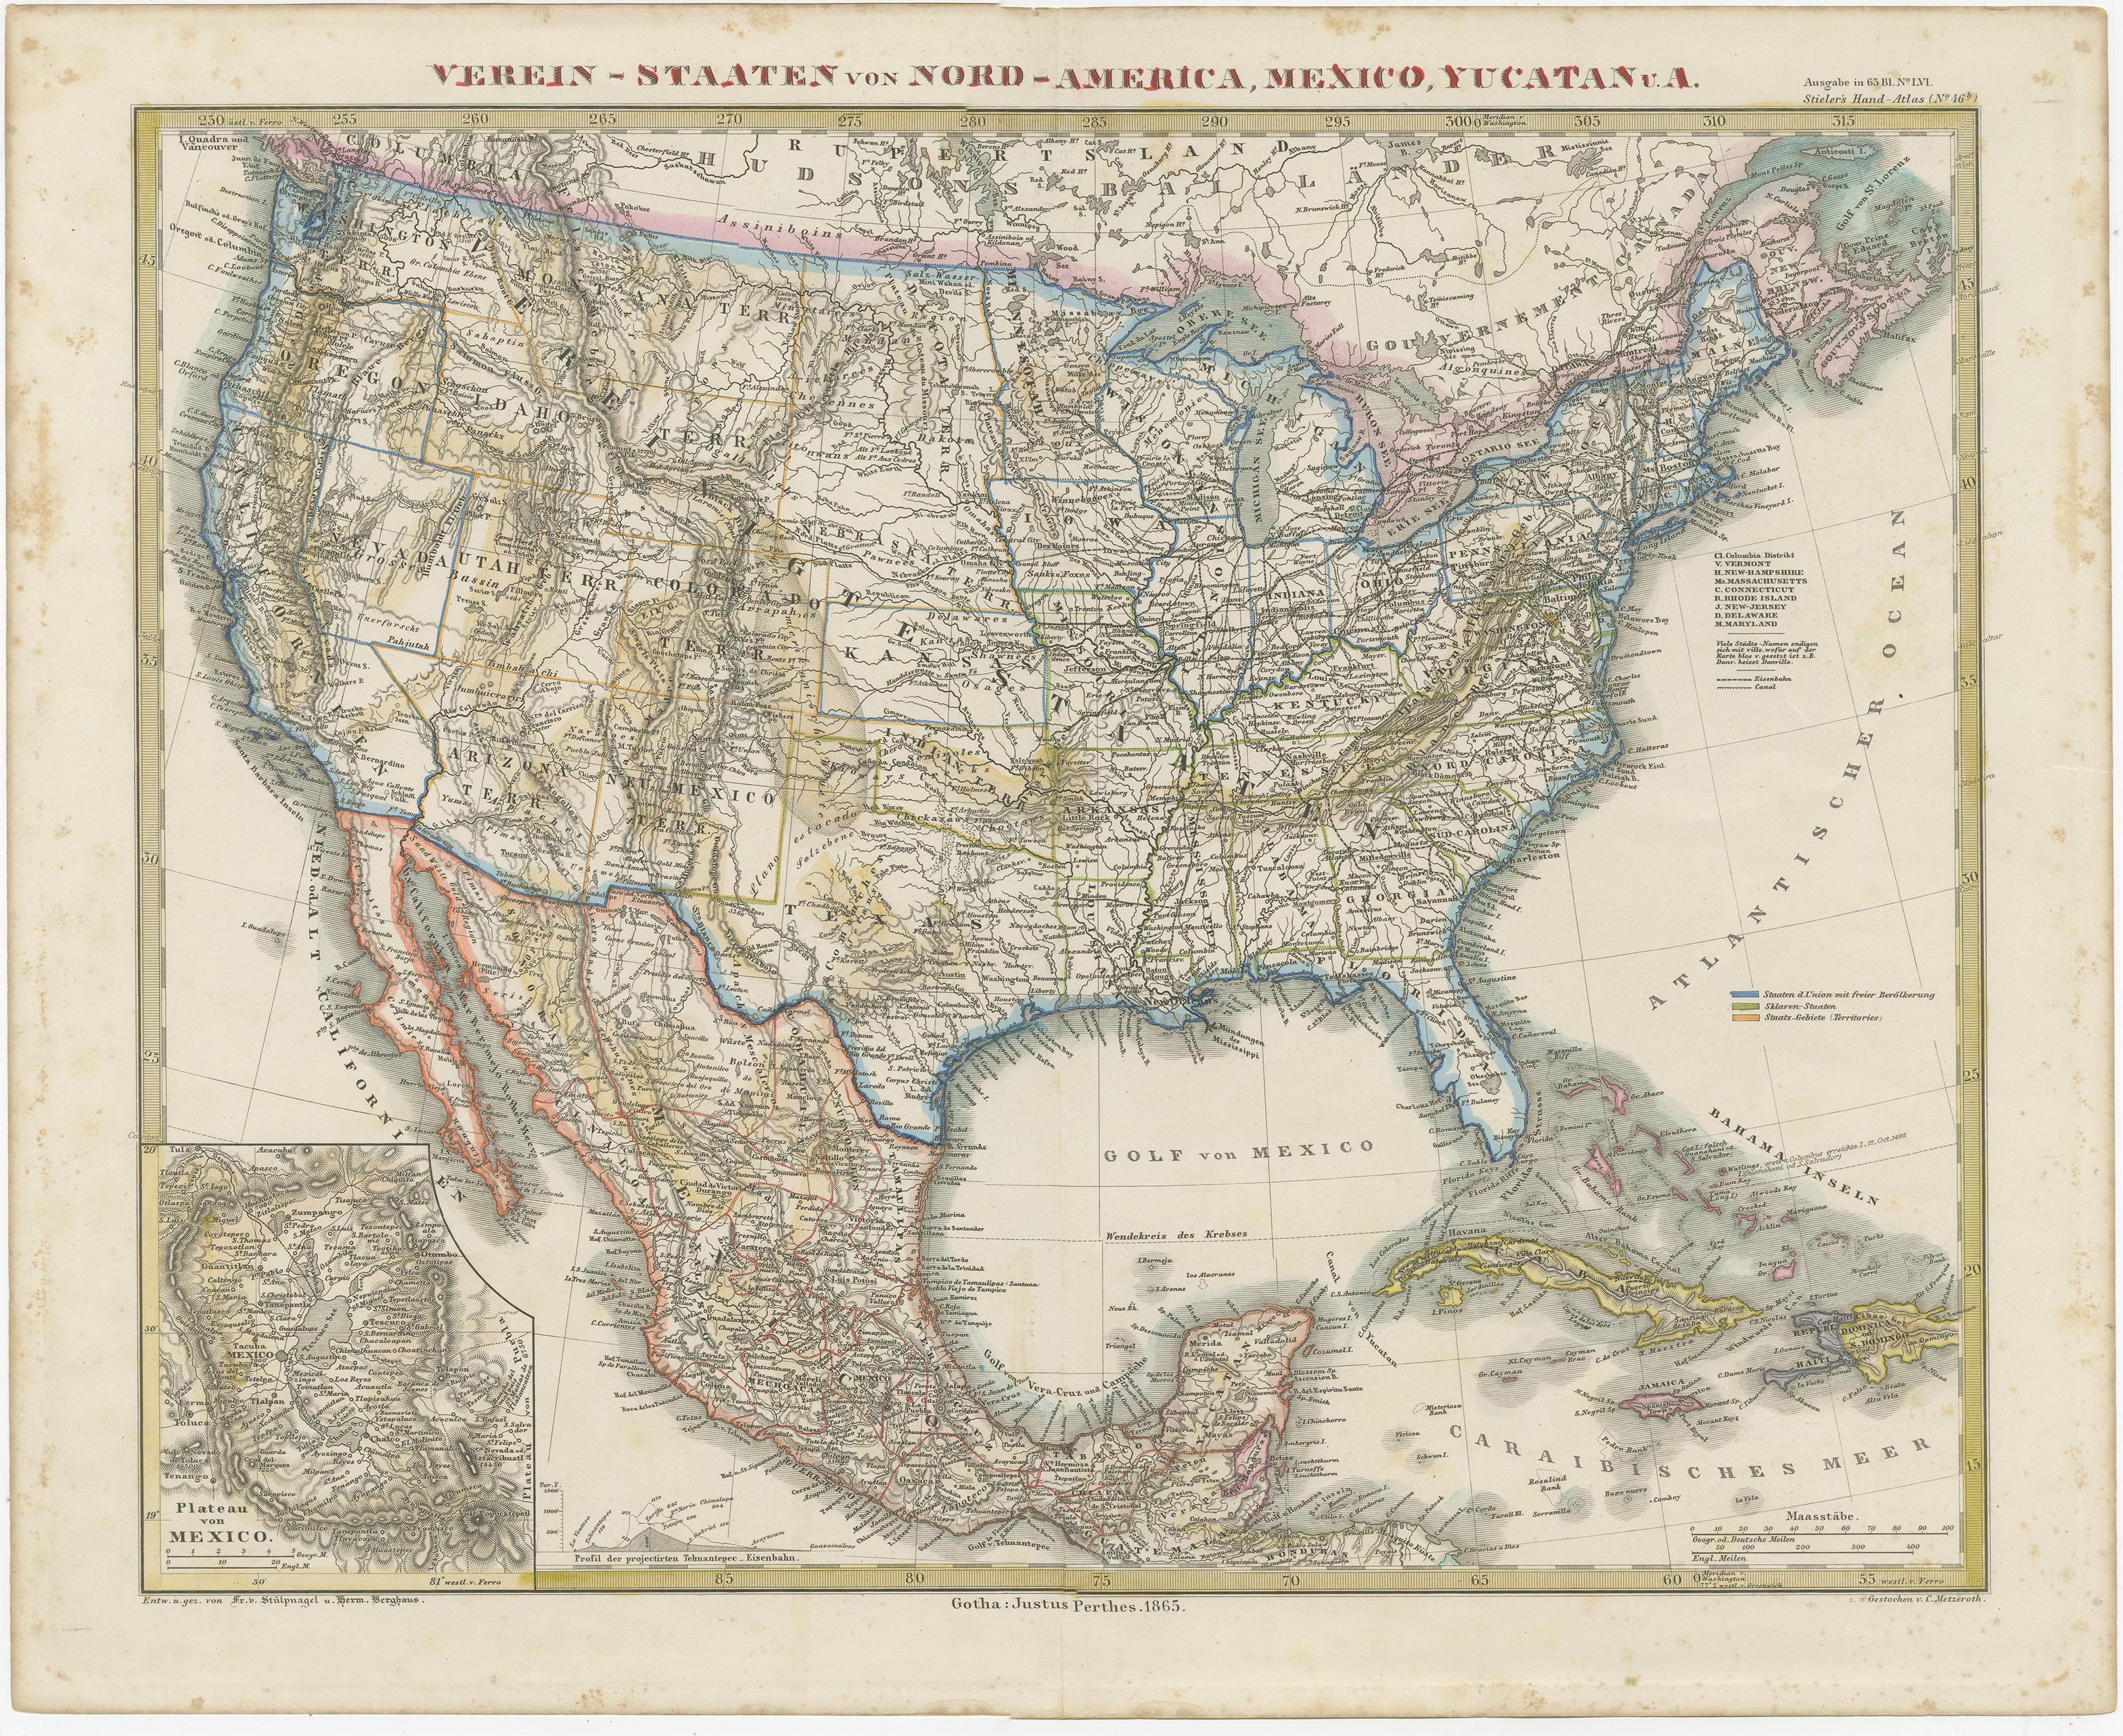 Antike Karte mit dem Titel 'Vereins-Staaten von Nord-Amerika, Mexiko, Yucatan u.a.'. Sehr detaillierte Karte der Vereinigten Staaten von Amerika mit der Karibik. Mit einer beigefügten Karte der Umgebung von Mexiko-Stadt.

Diese Karte stammt aus